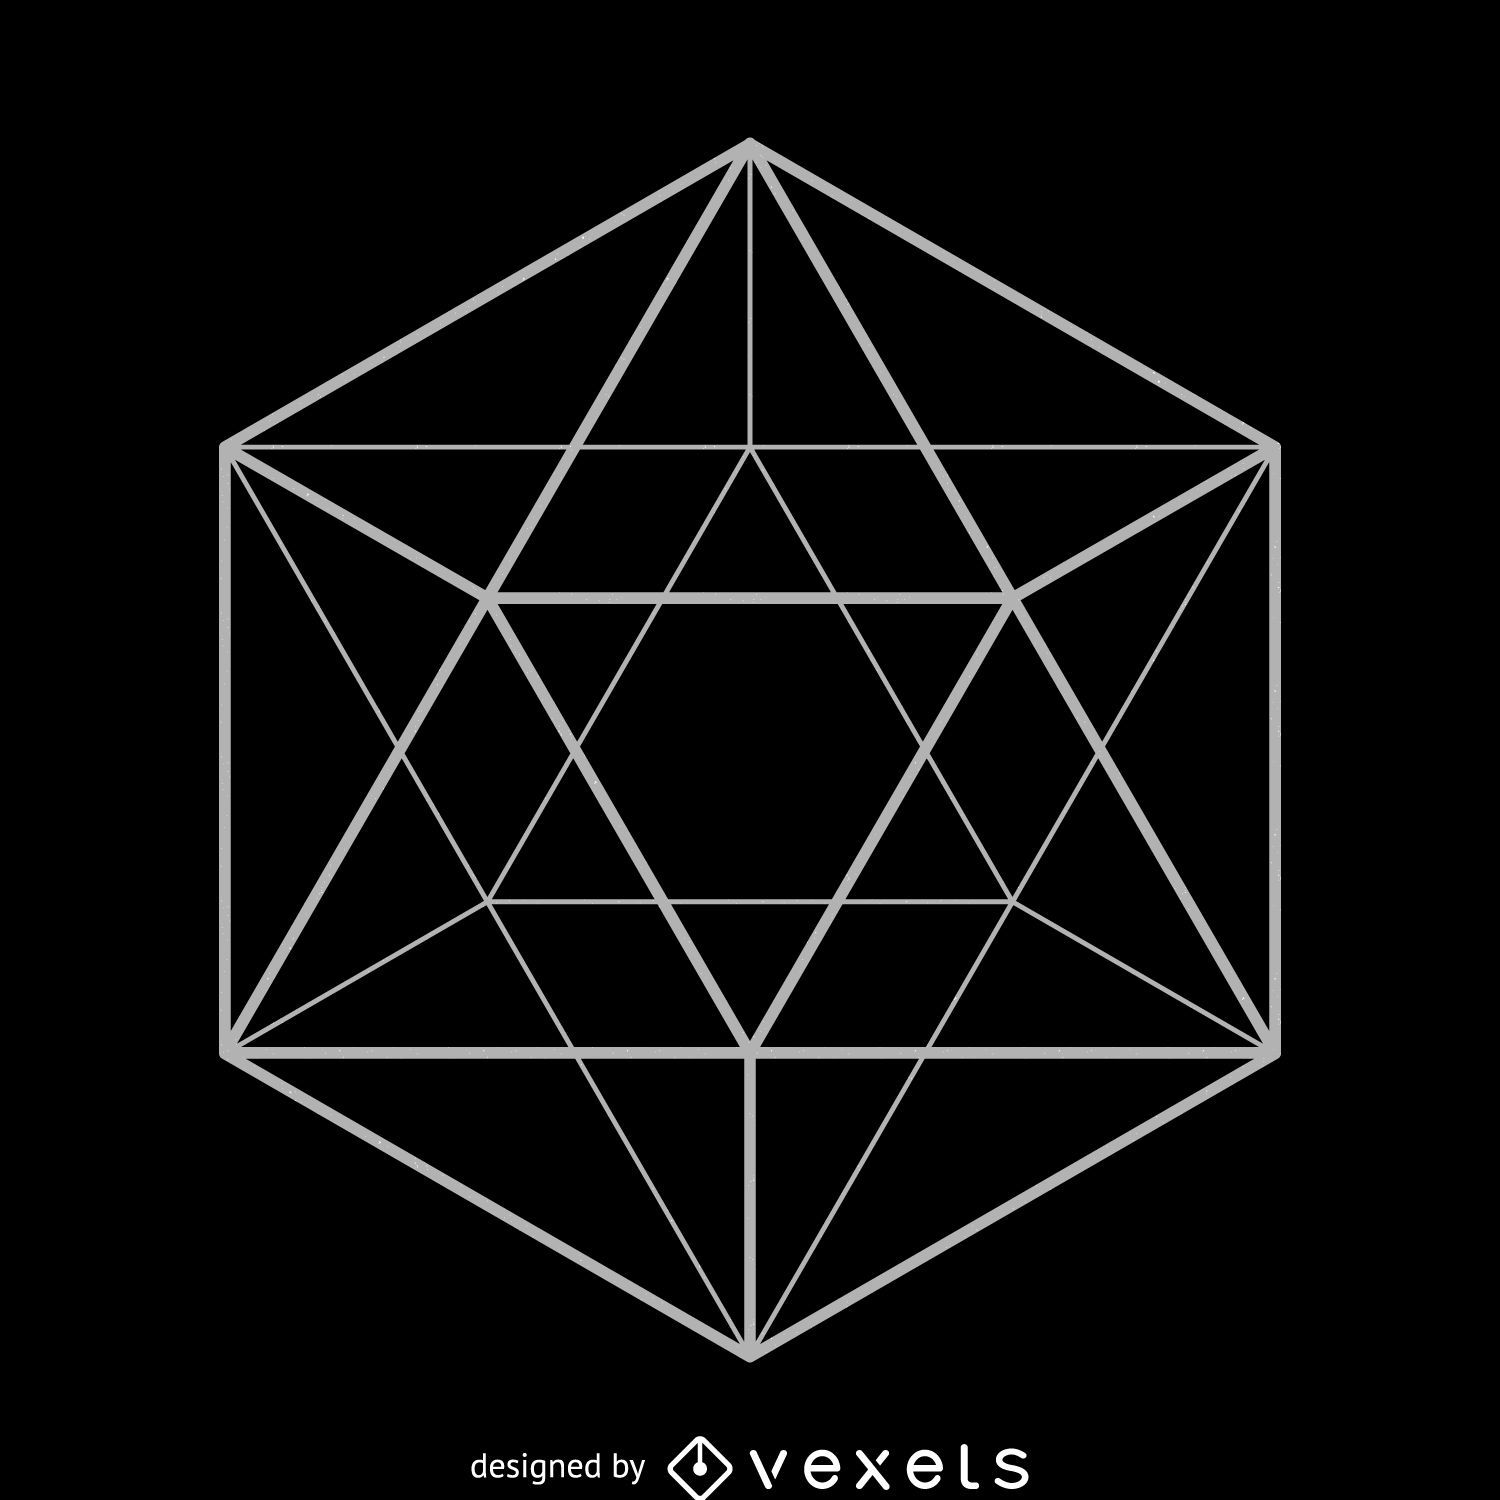 Icosahedron sacred geometry design